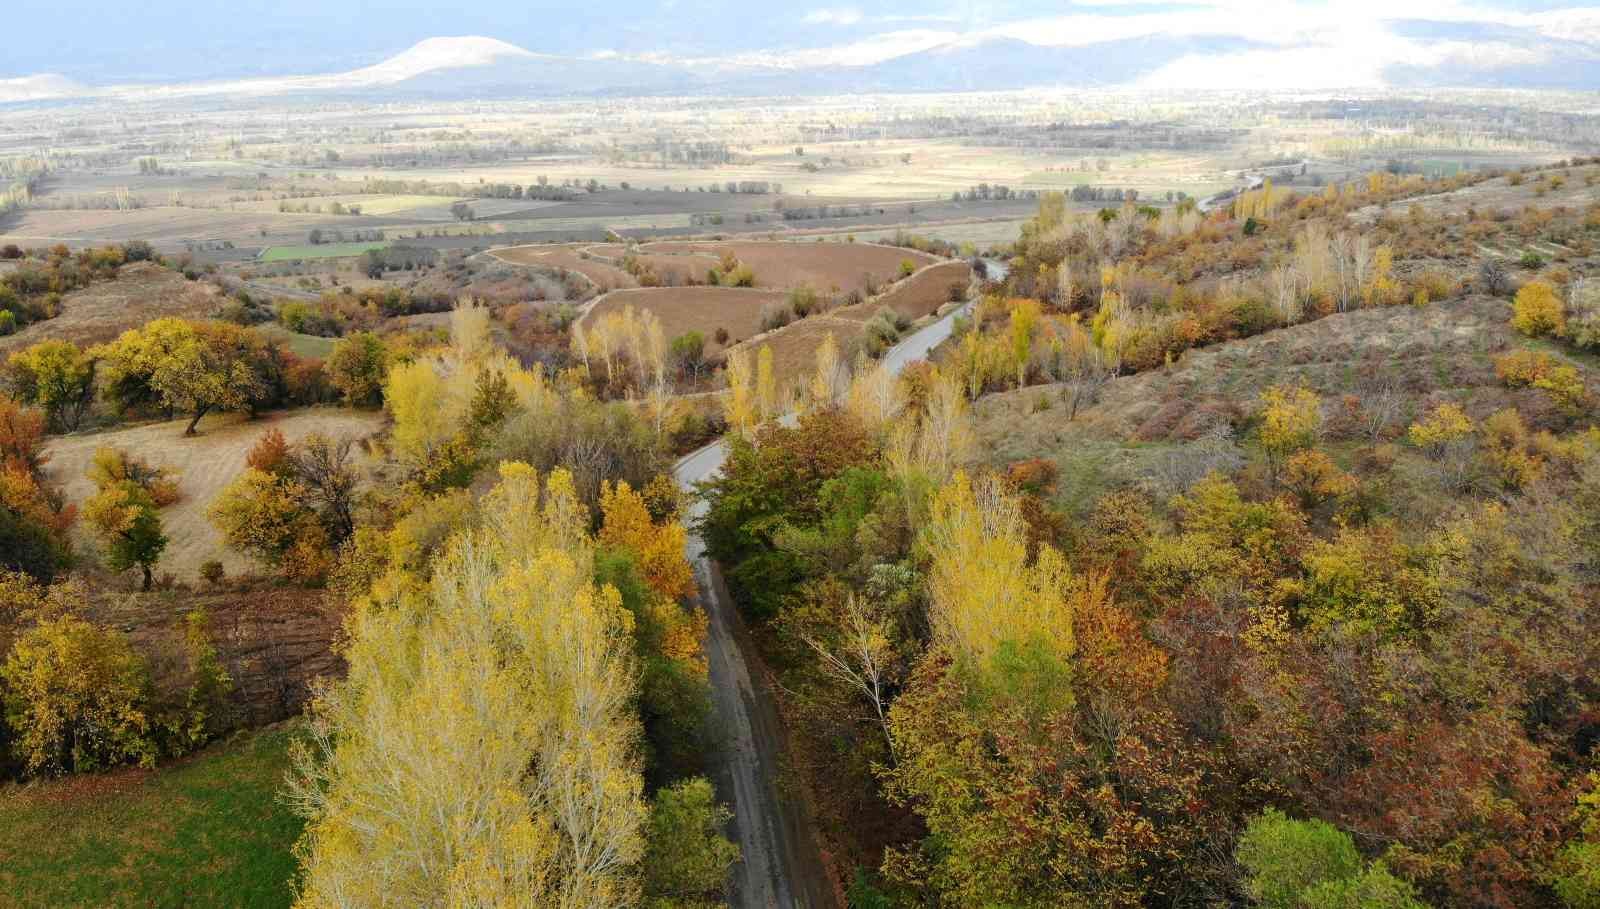 Sonbahardan kışa geçişte renk cümbüşü oluşturan ağaçlar farklı güzelliğe büründü #erzincan